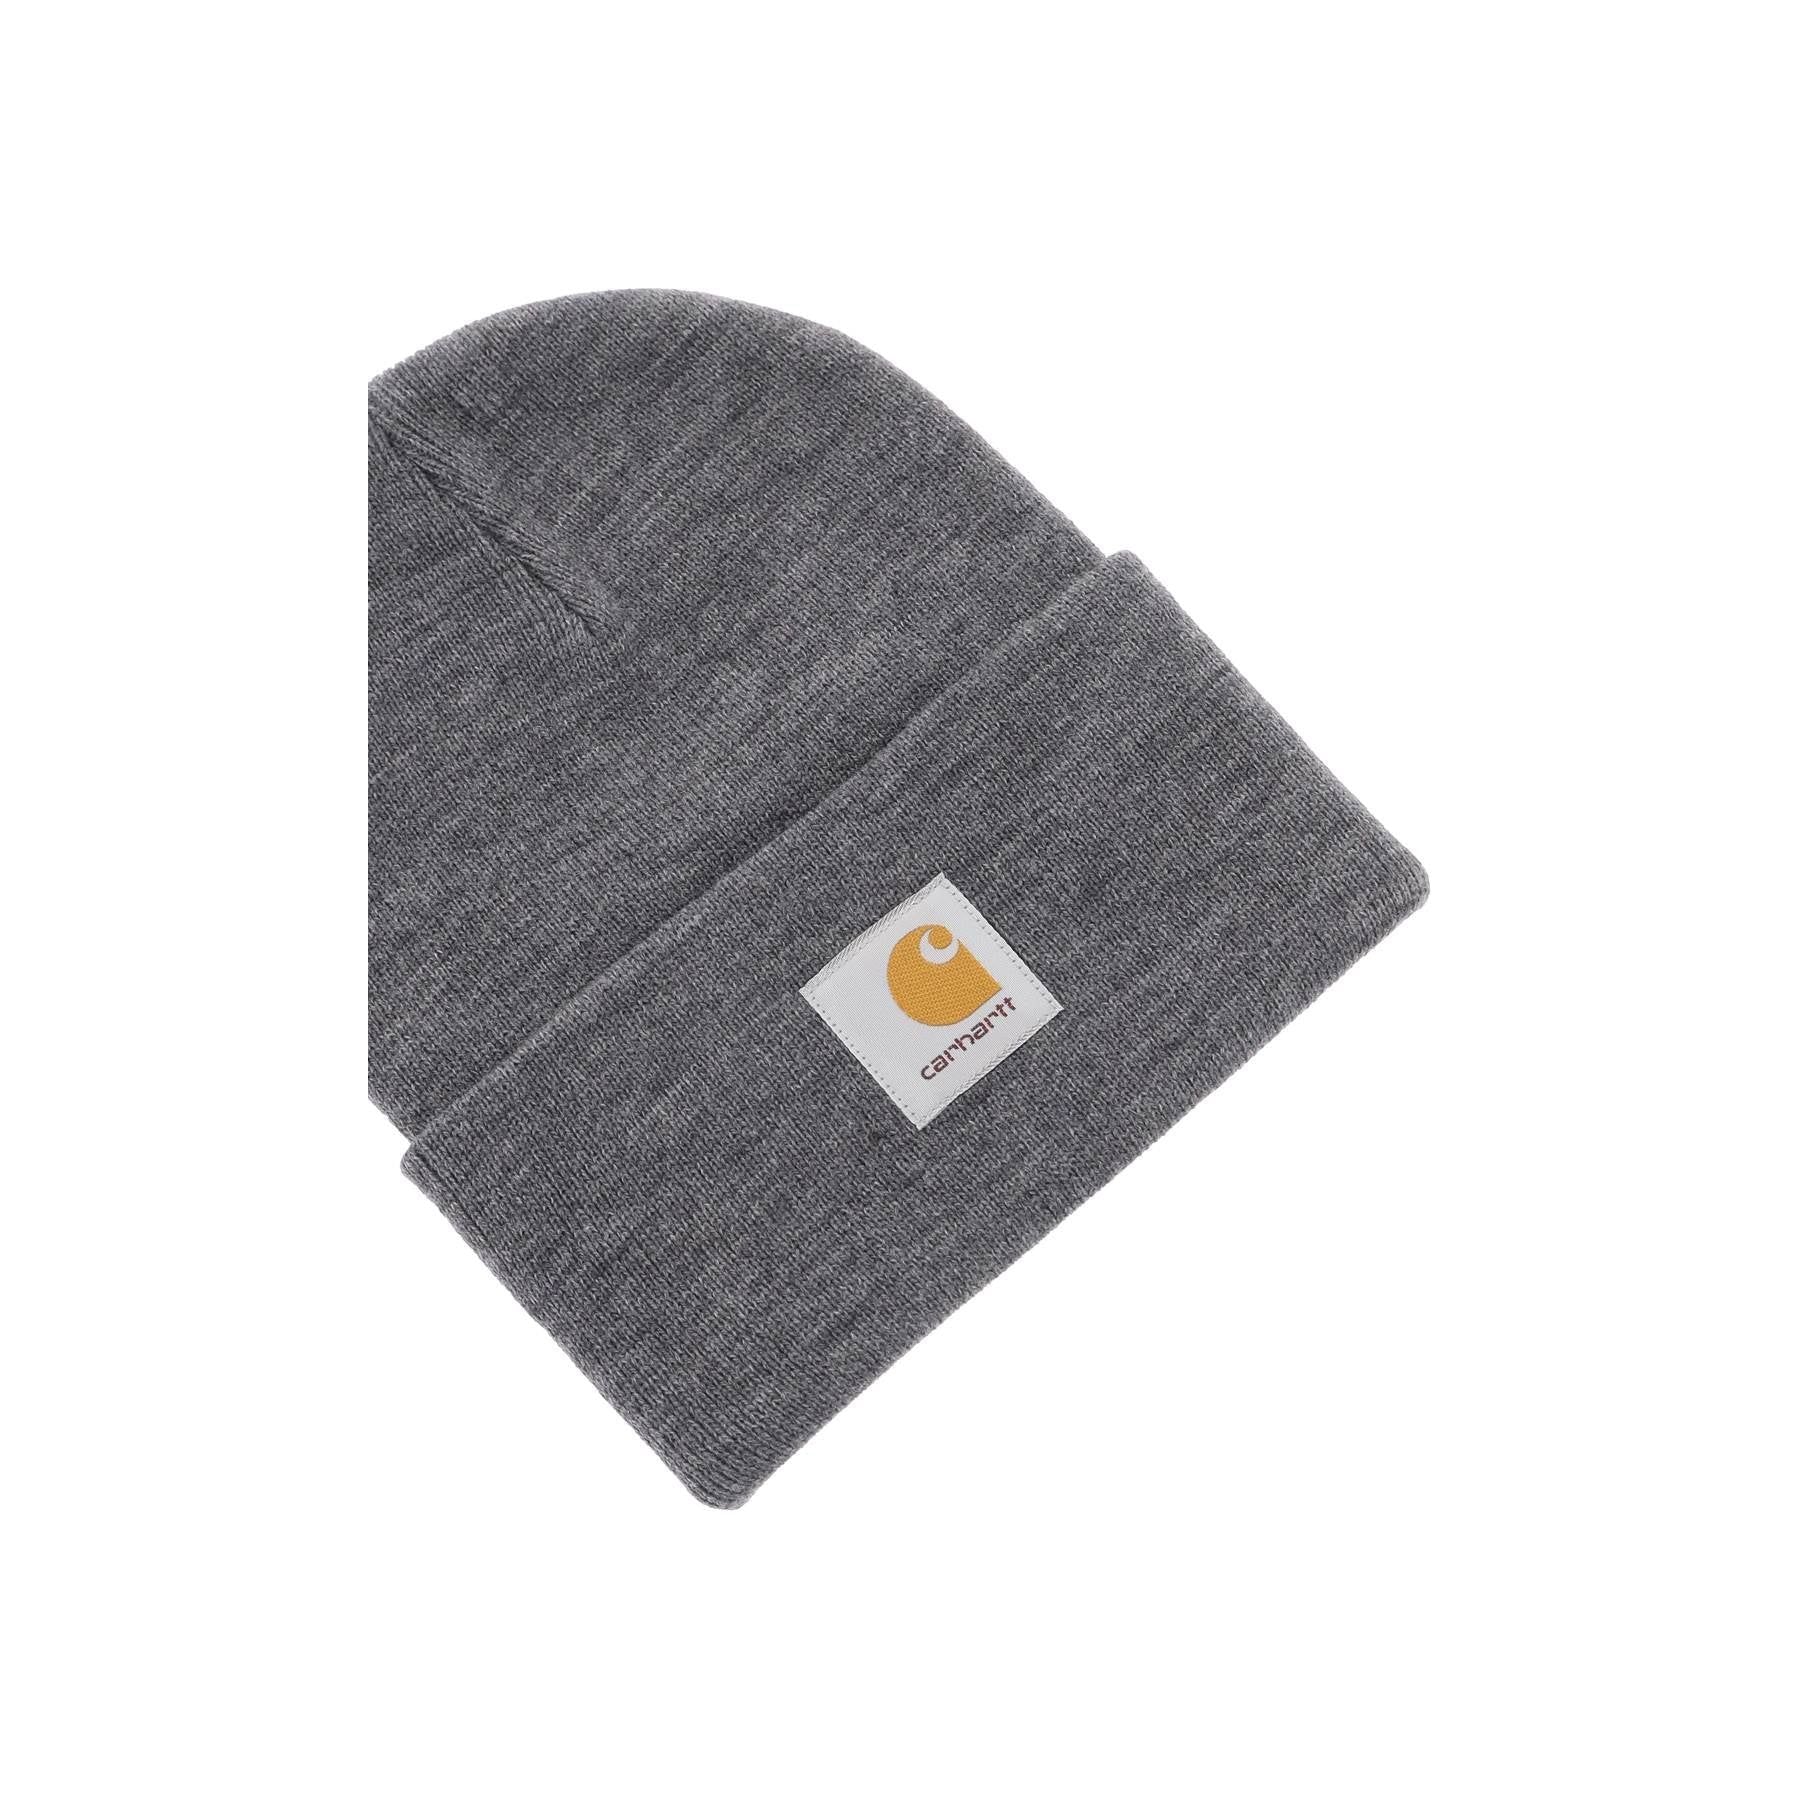 Jacquard Logo Knit Beanie Hat